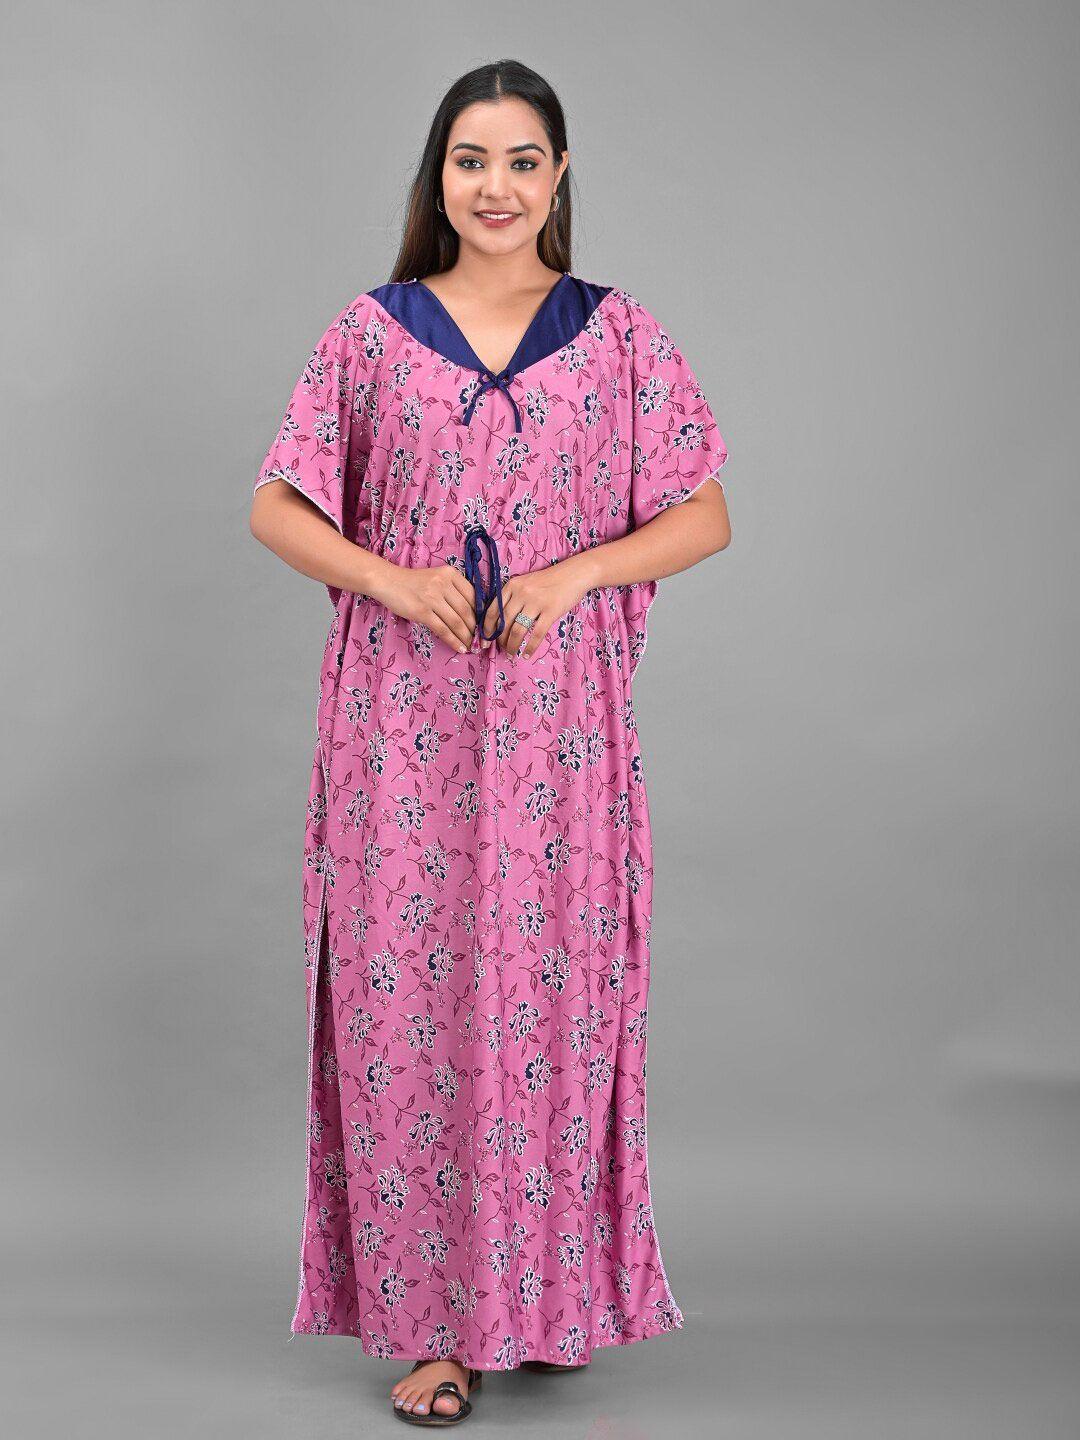 apratim pink printed kaftan maxi nightdress